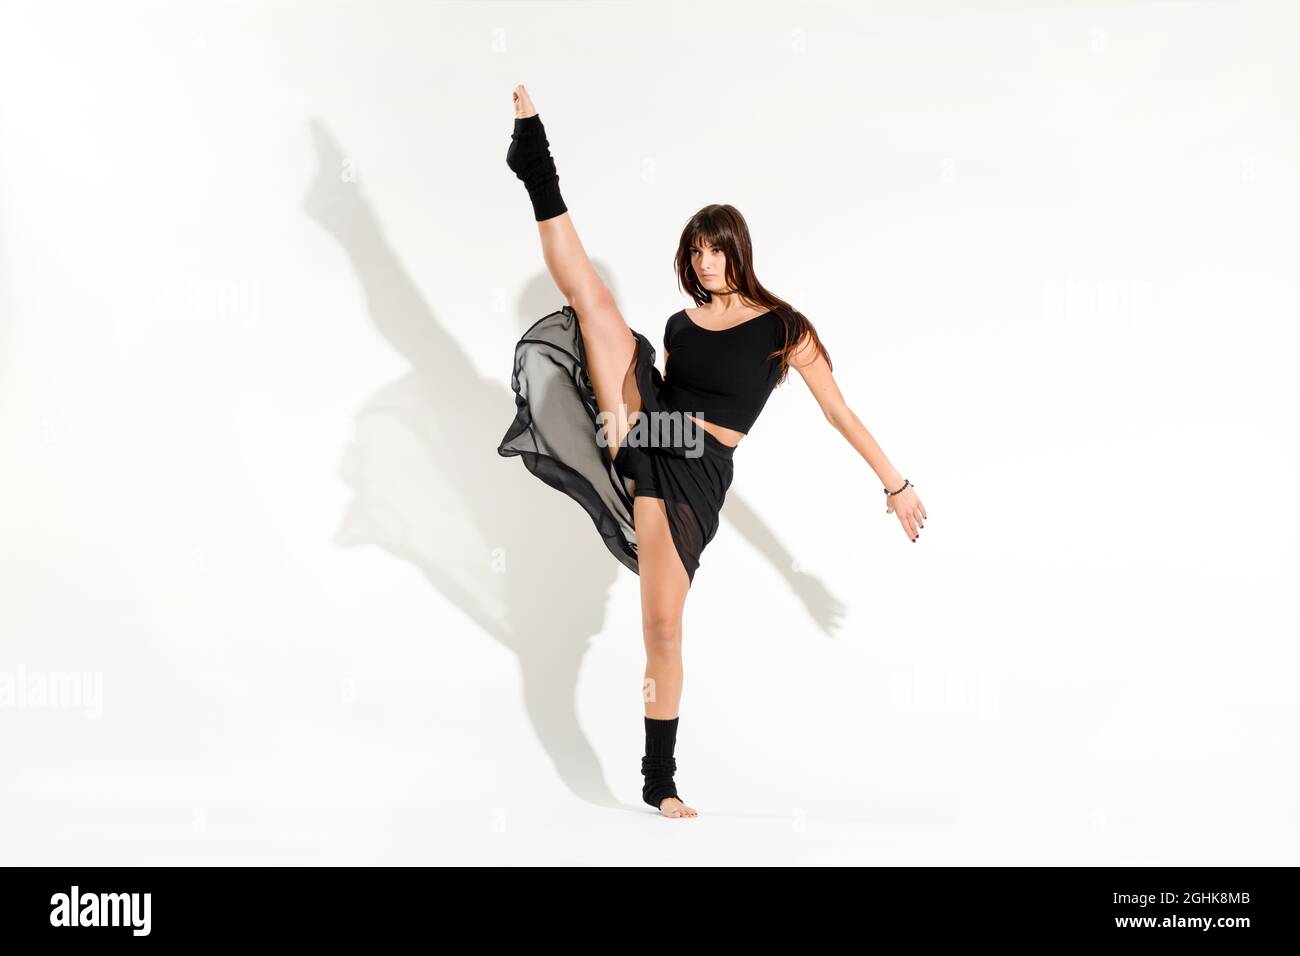 Corpo completo di giovane ballerina a piedi nudi in abito nero che esegue una posa di pattinaggio su ghiaccio dinamica con gamba sollevata contro la parete bianca Foto Stock